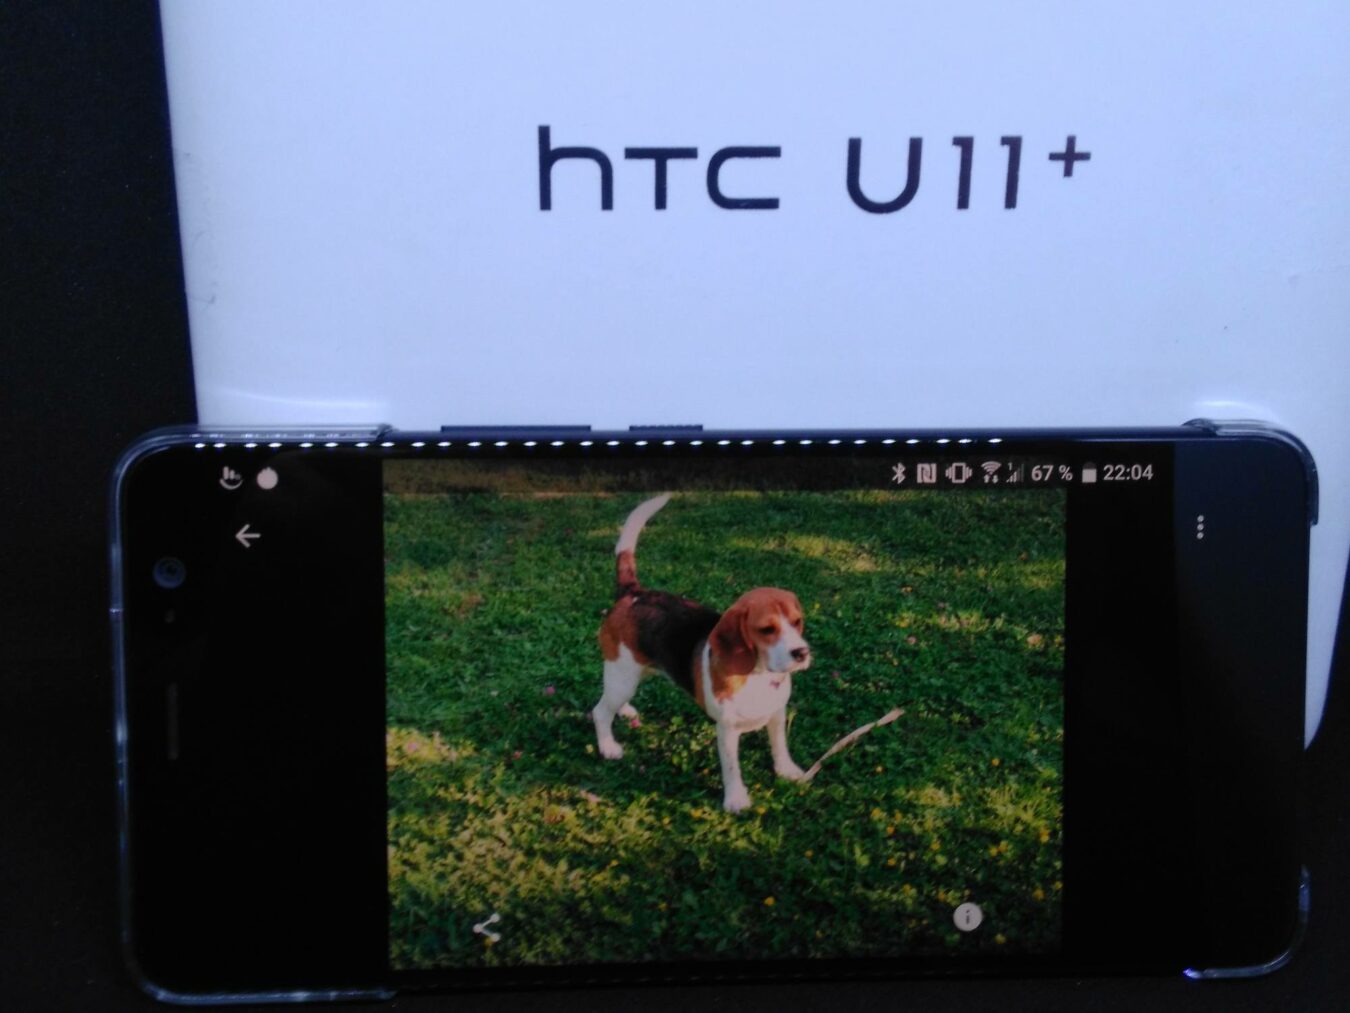 HTC UC11+